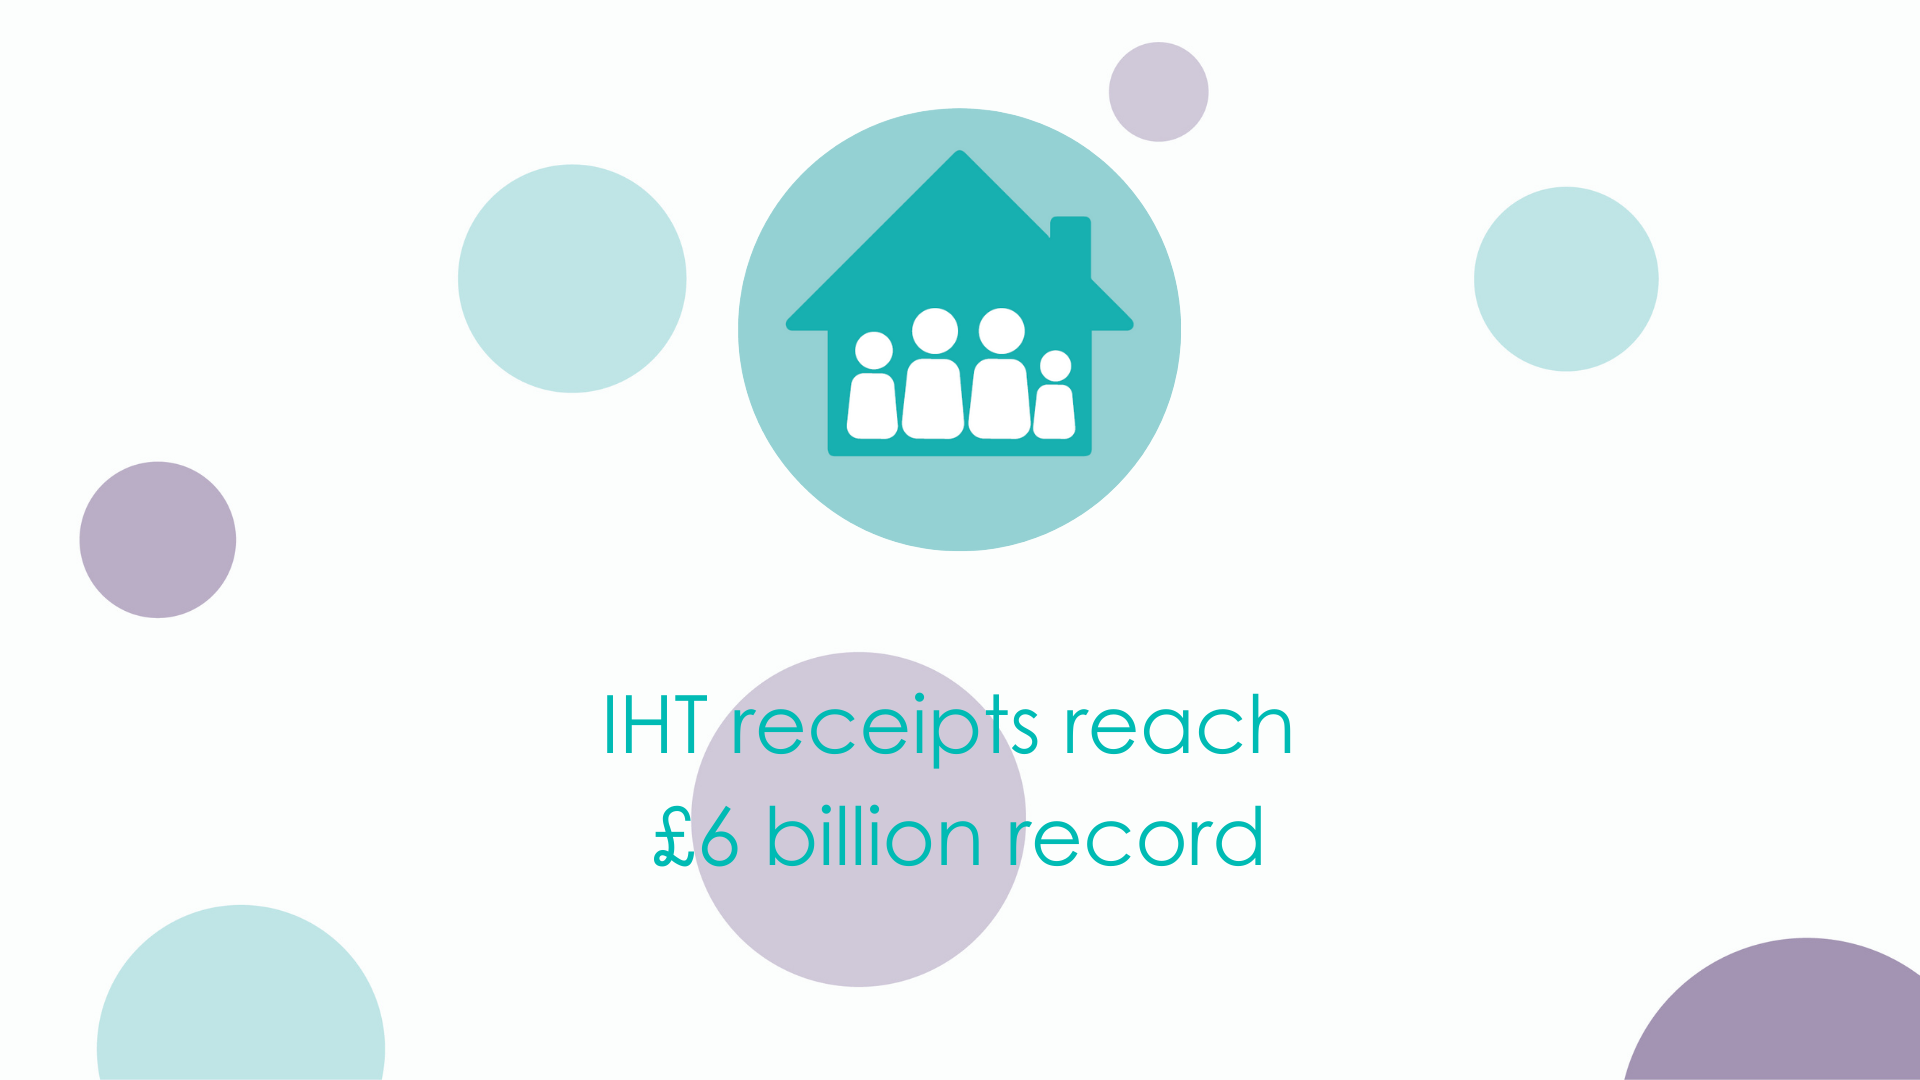 IHT receipts reach £6 billion record